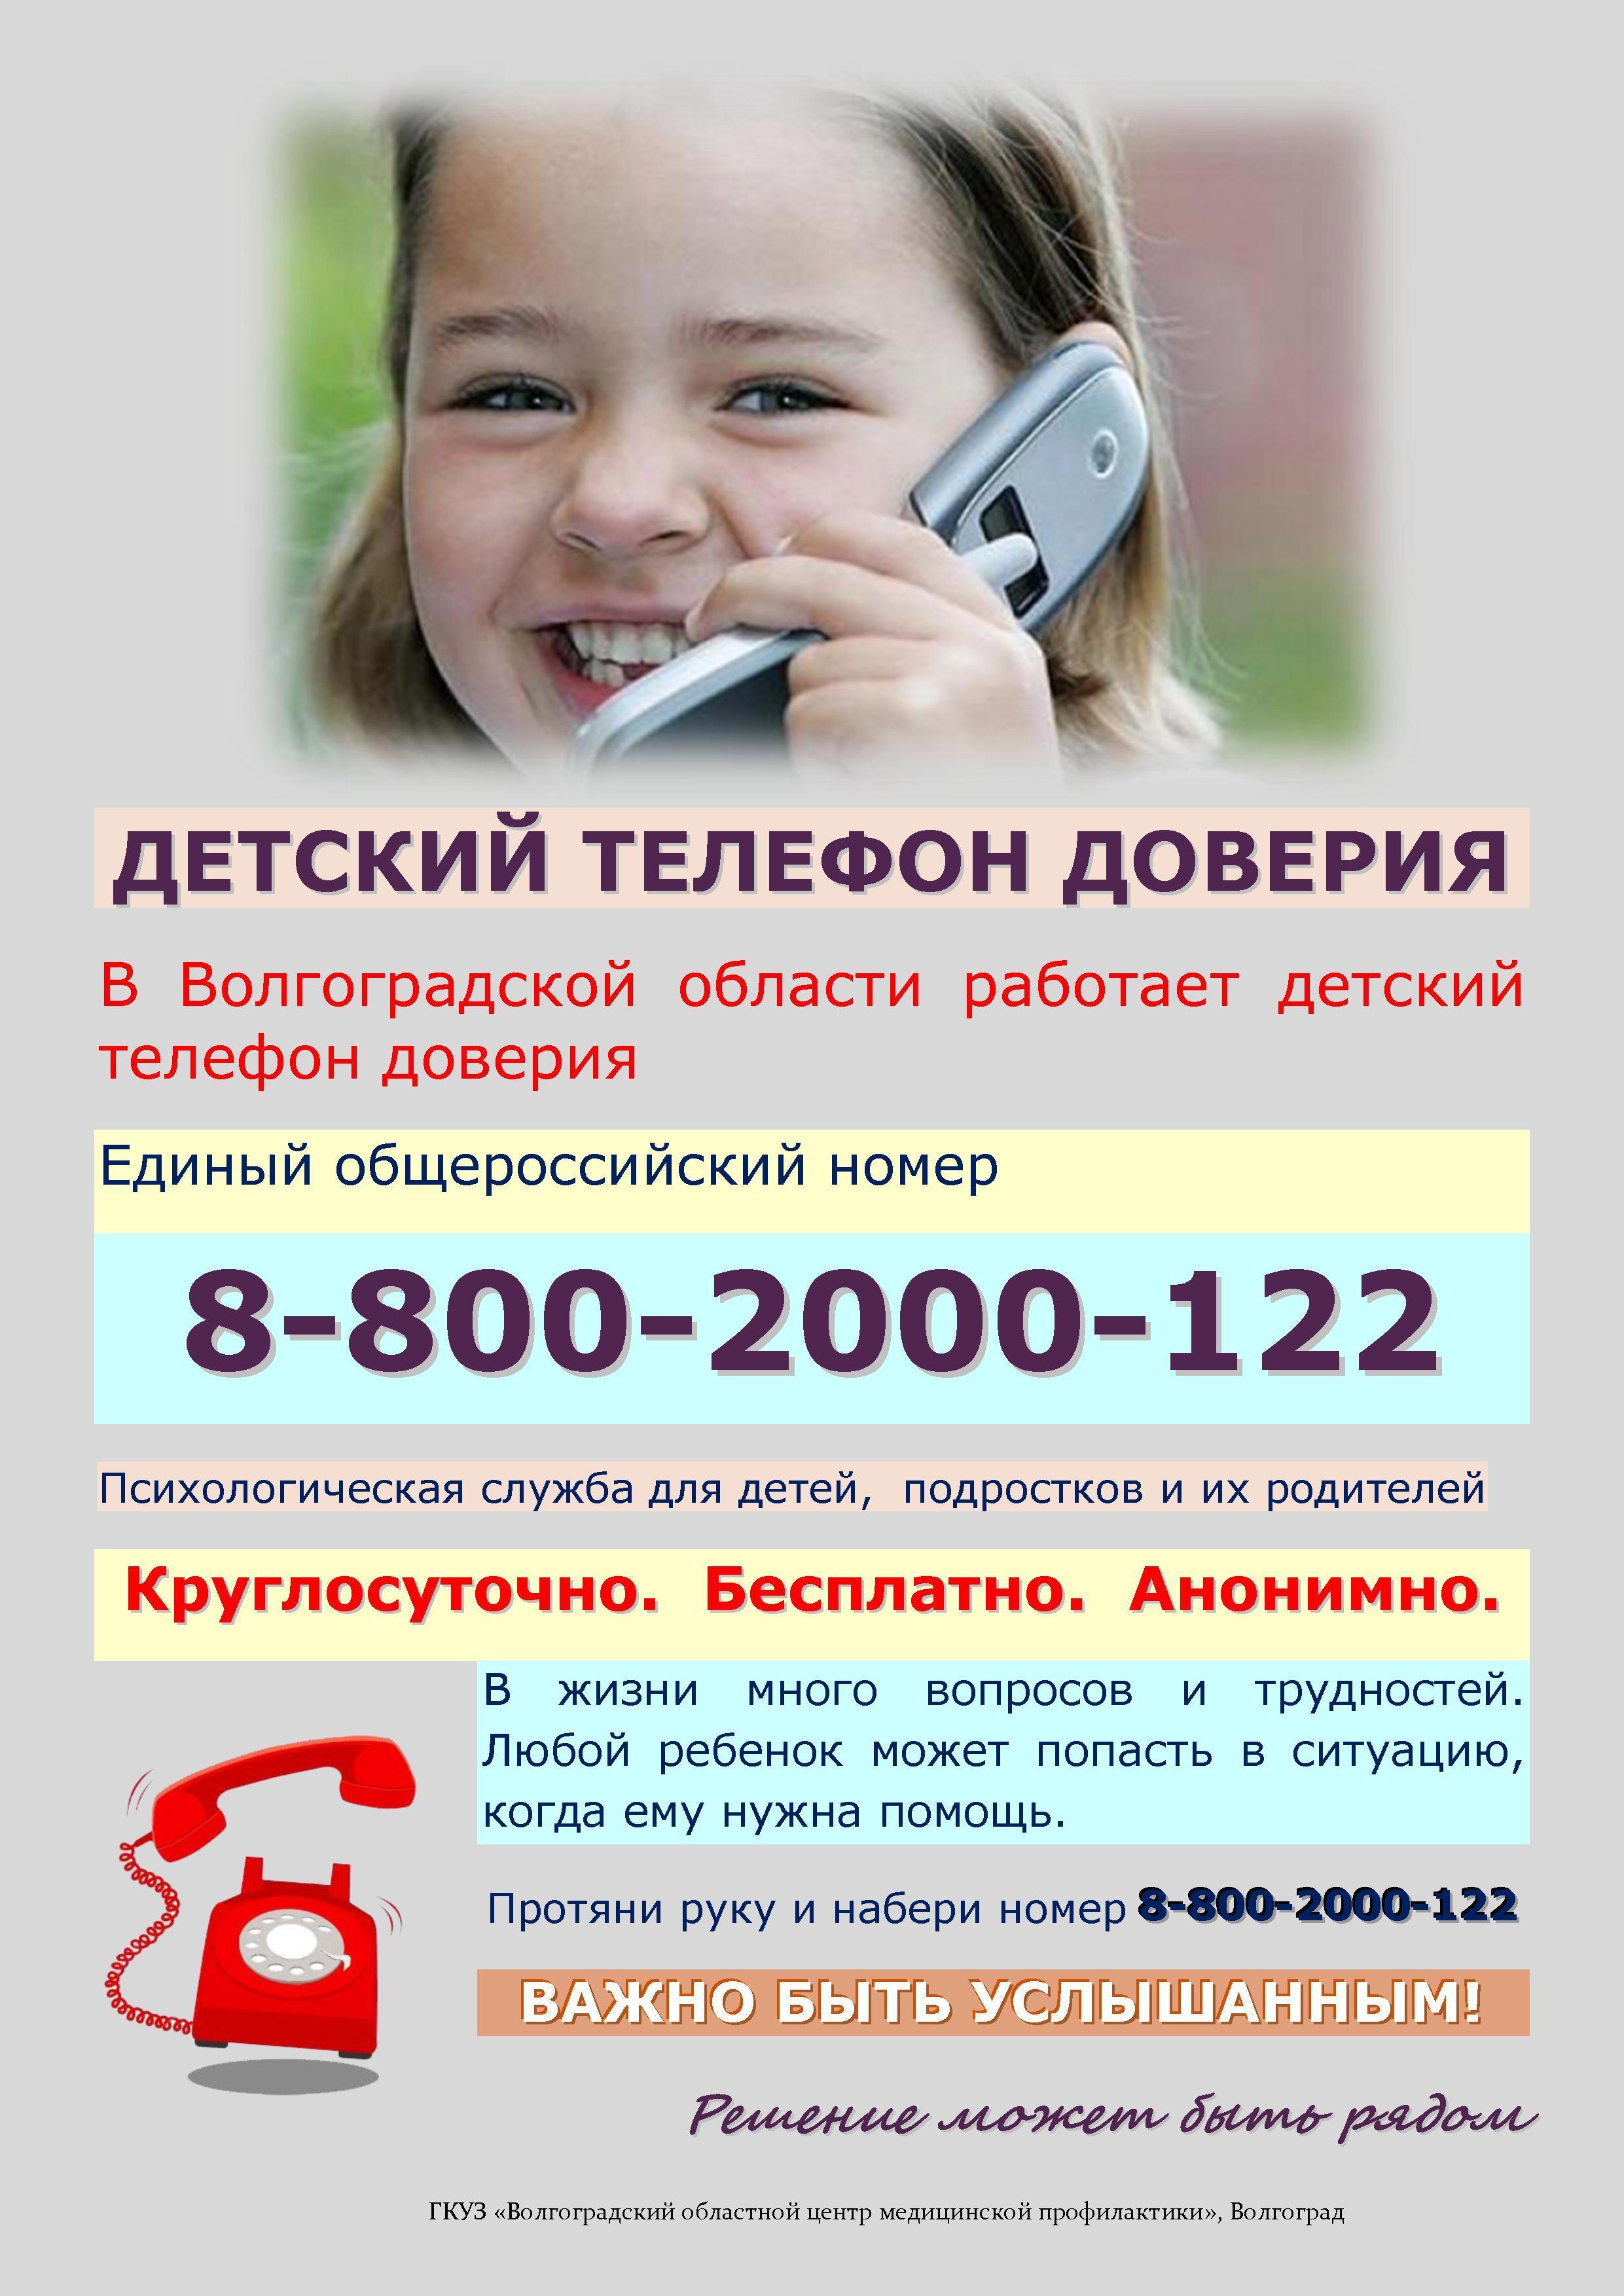 Телефон доверия видео. Телефон доверия. Детский телефон доверия. Телефон доверия для детей подростков и их родителей. Номер телефона доверия для детей.